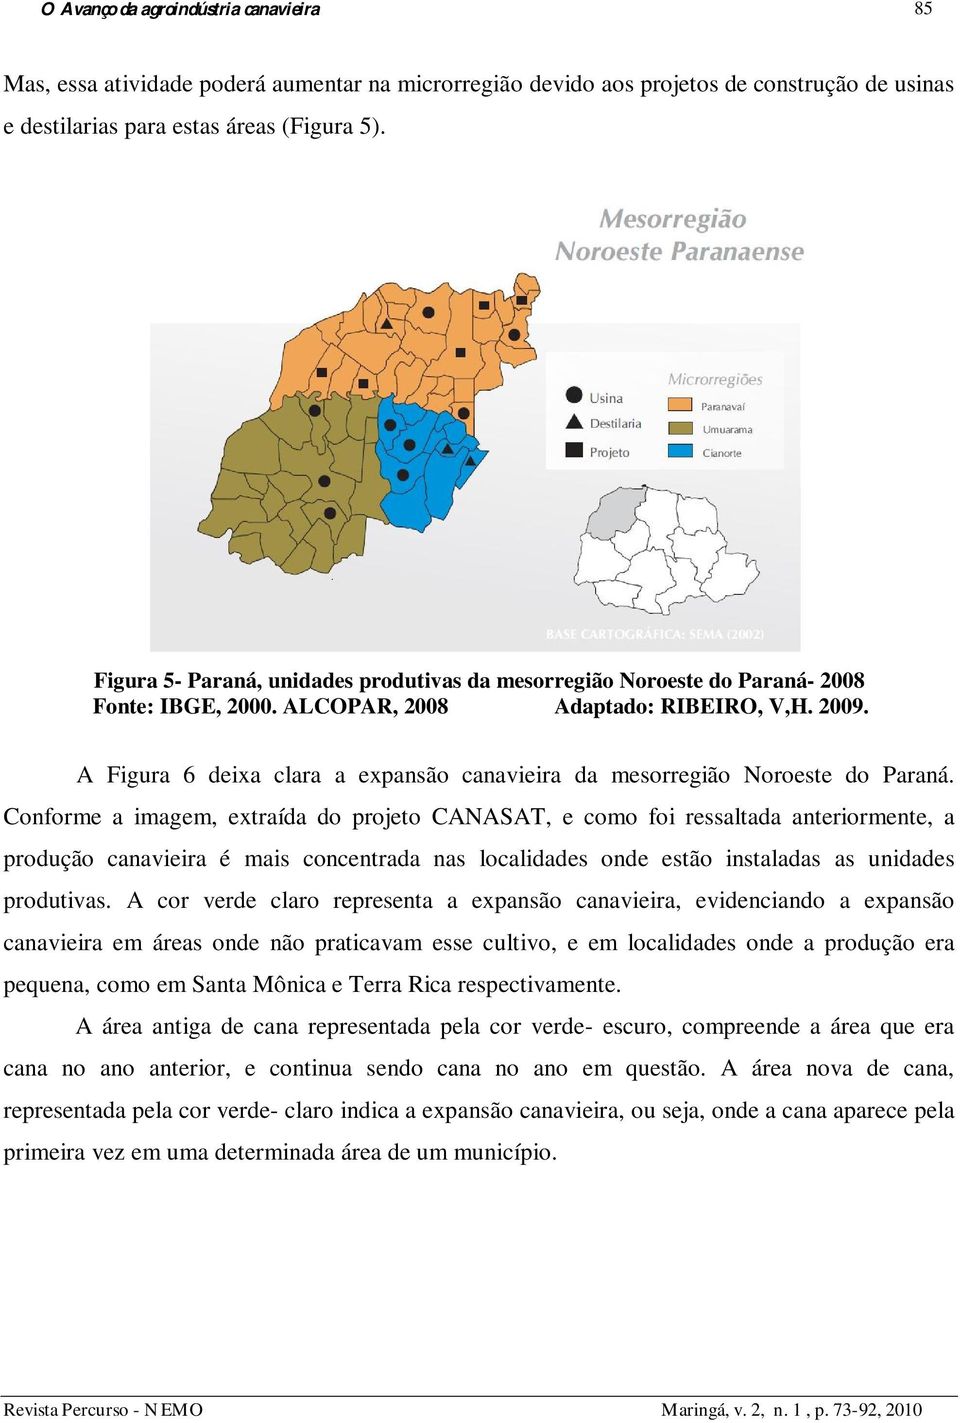 A Figura 6 deixa clara a expansão canavieira da mesorregião Noroeste do Paraná.